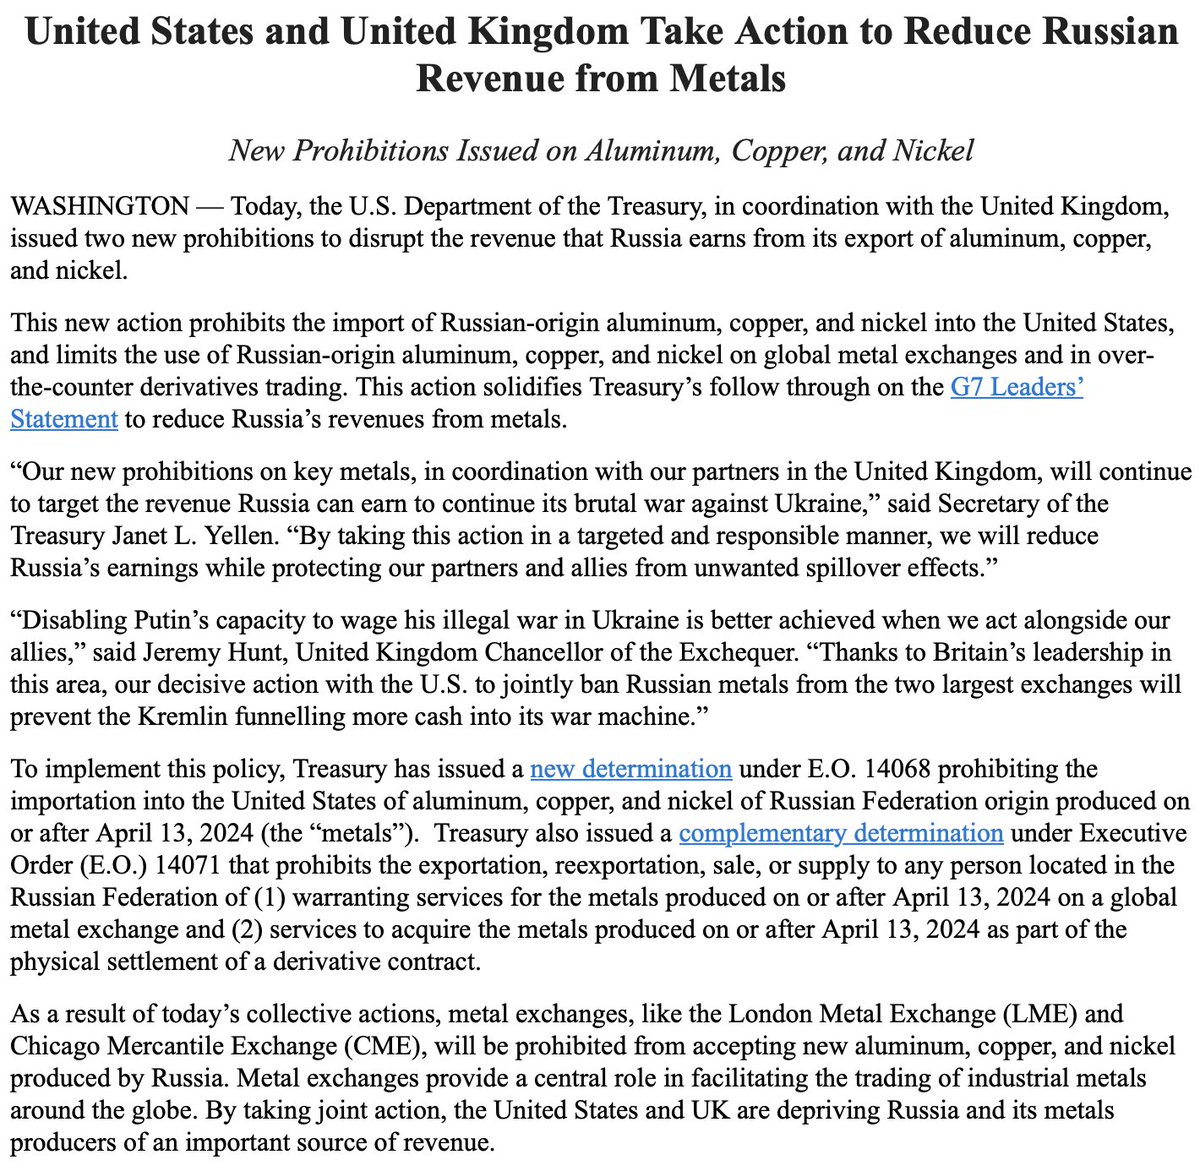 США и Великобритания ограничили экспорт российских металлов, - @USTreasury, британские чиновники ввели новые запреты на алюминий, медь и никель российского происхождения